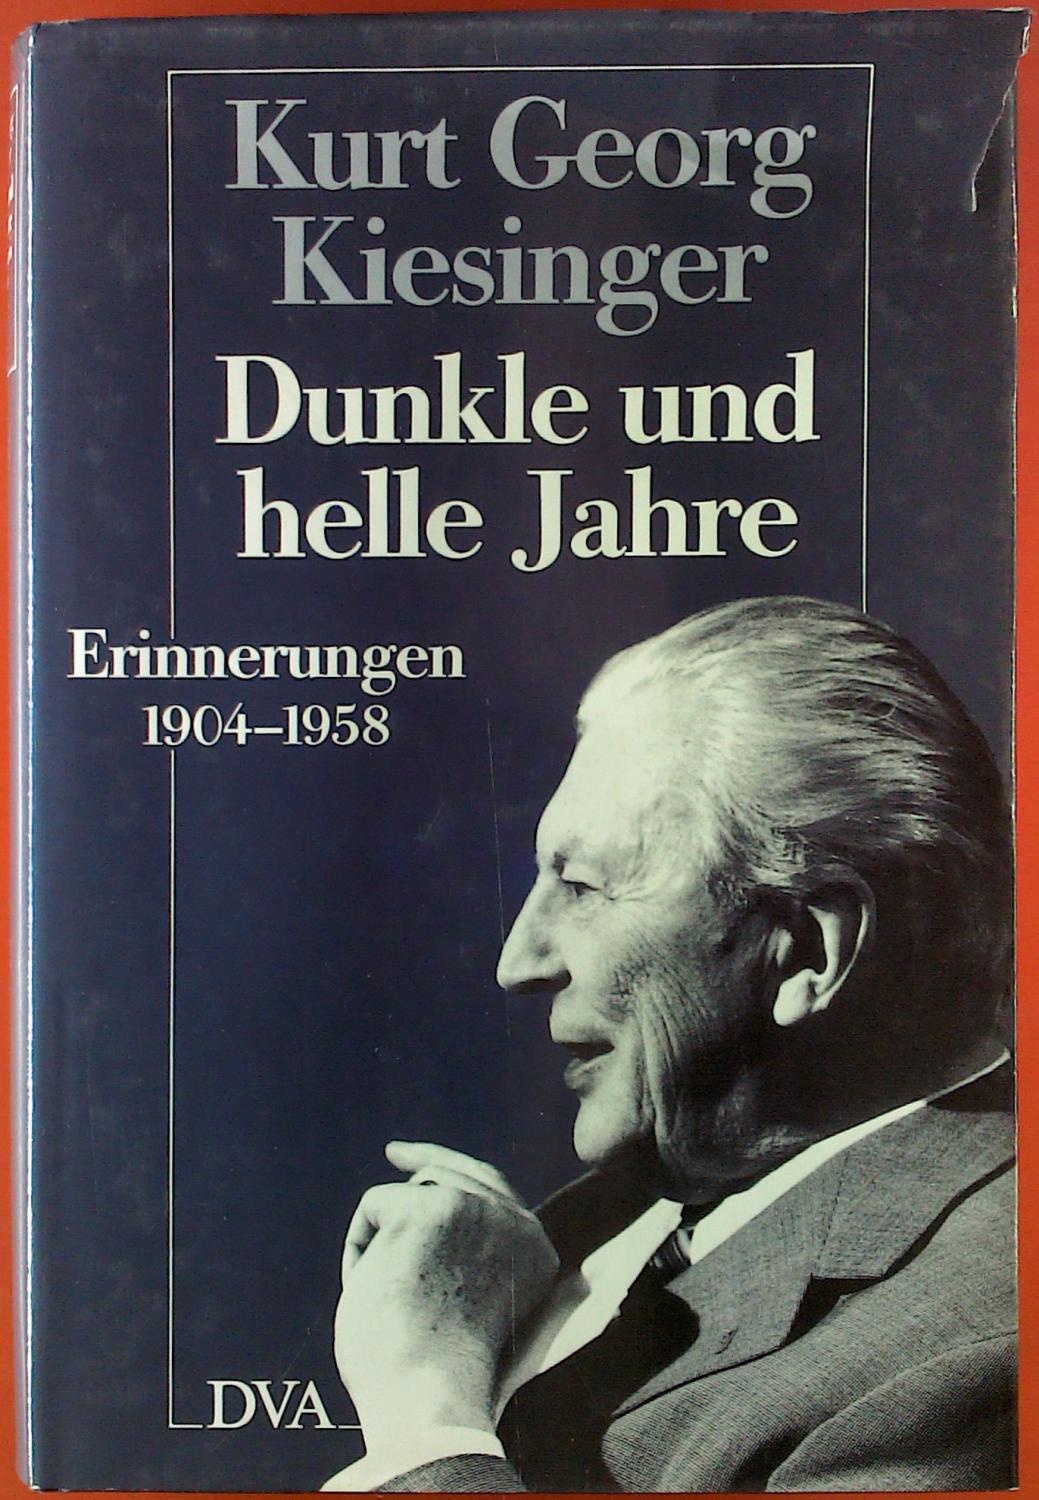 Kurt Georg Kiesinger. Dunkle und helle Jahre. Erinnerungen 1904 - 1958. - Herausgegeben von Reinhard Schmoeckel